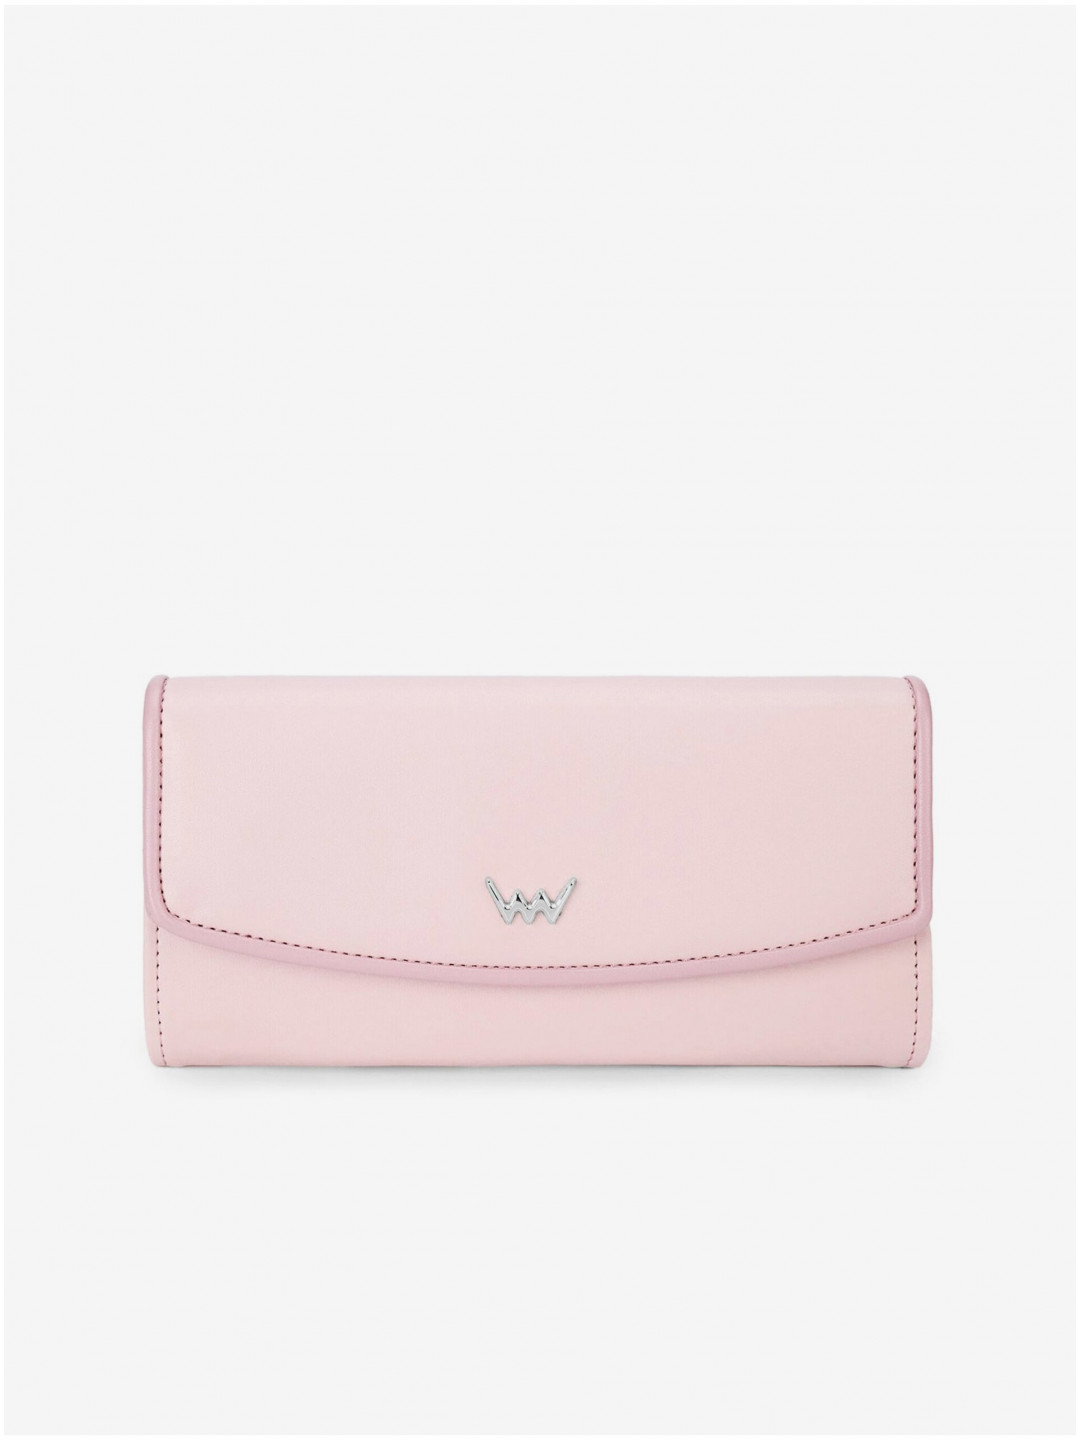 Světle růžová dámská peněženka VUCH Alfio Pink